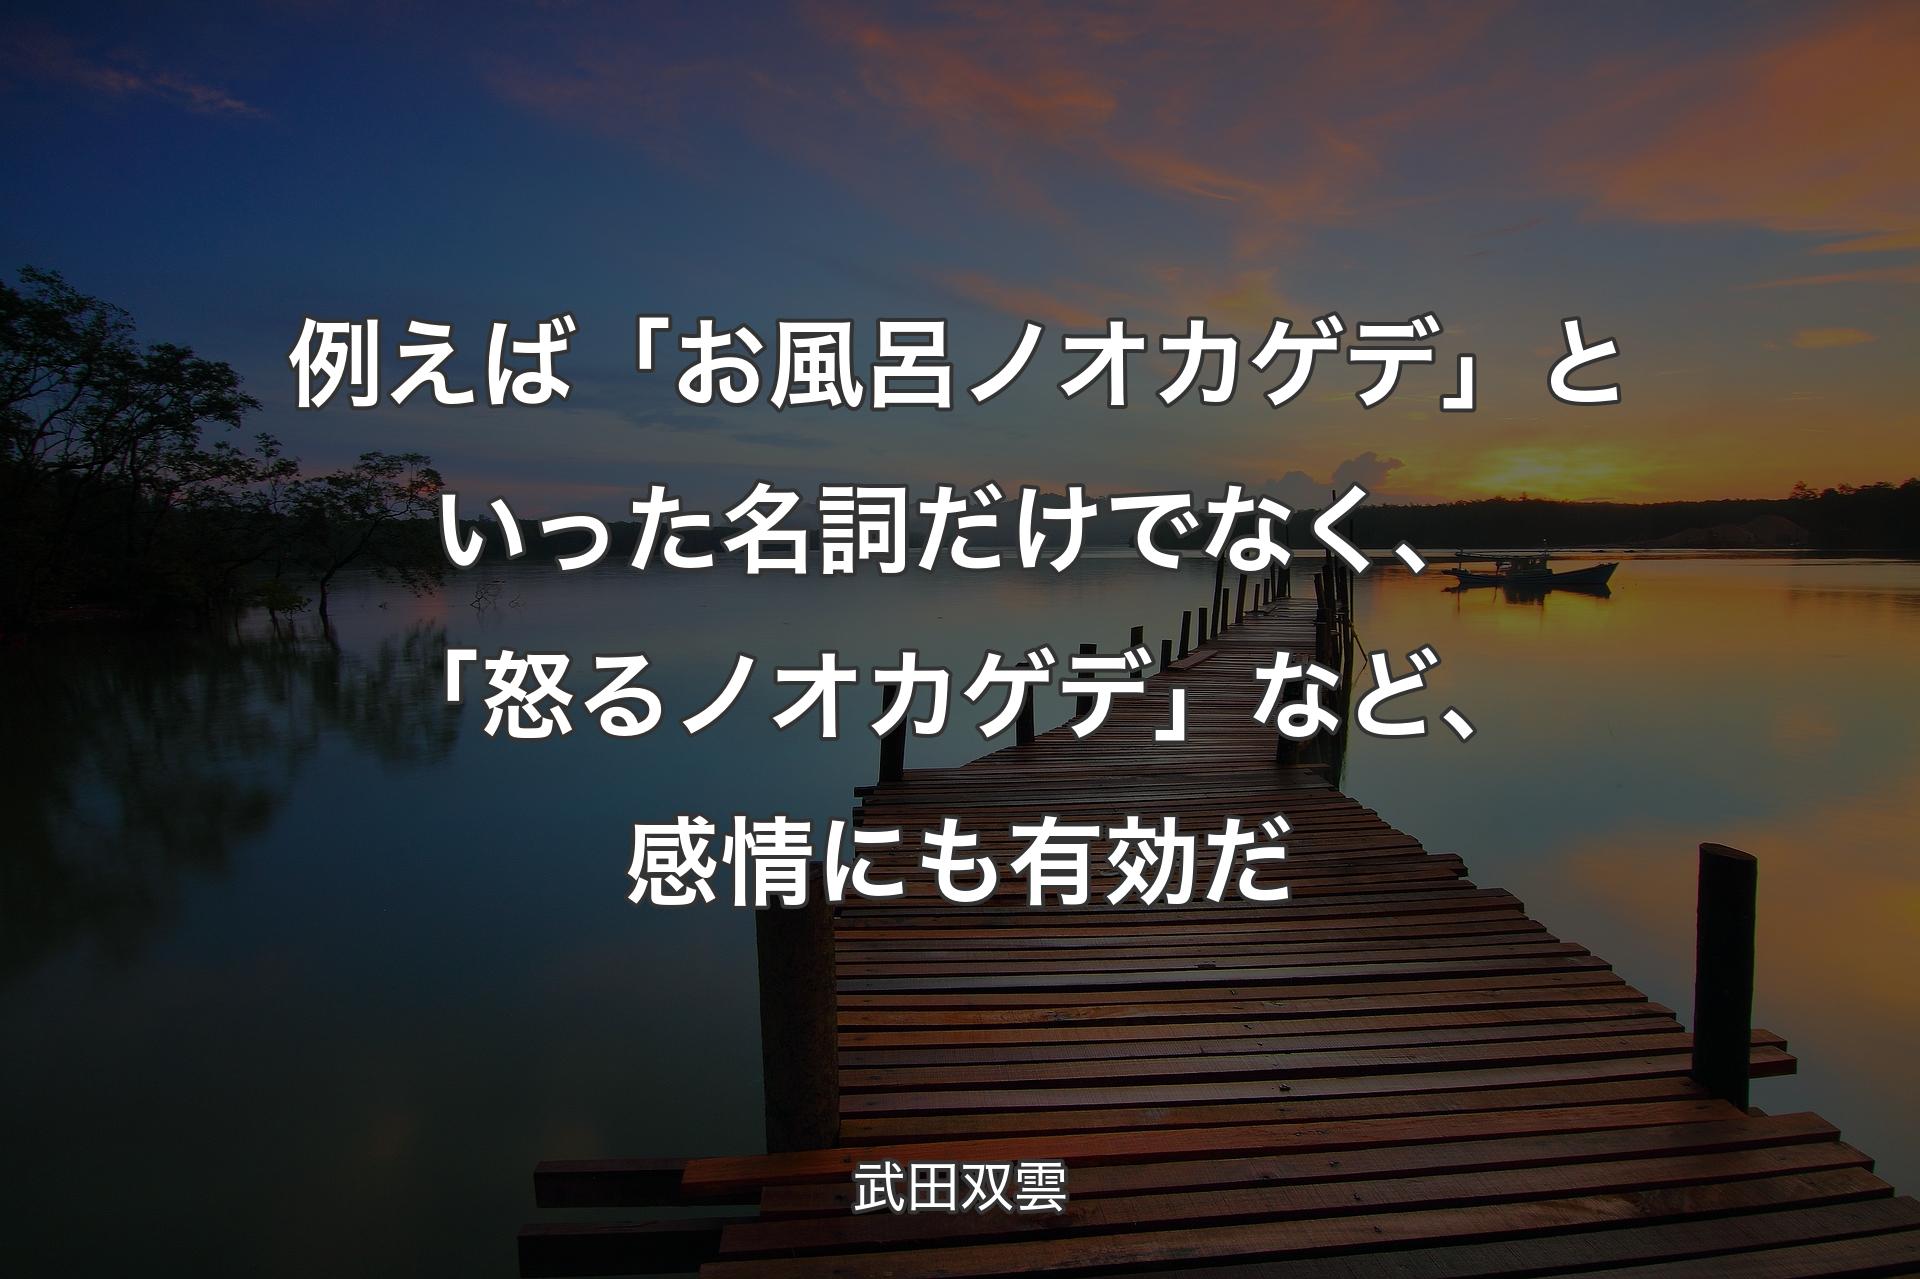 例えば「お風呂ノオカゲデ」といった名詞だけでなく、「怒るノオカゲデ」など、感情にも有効だ - 武田双雲